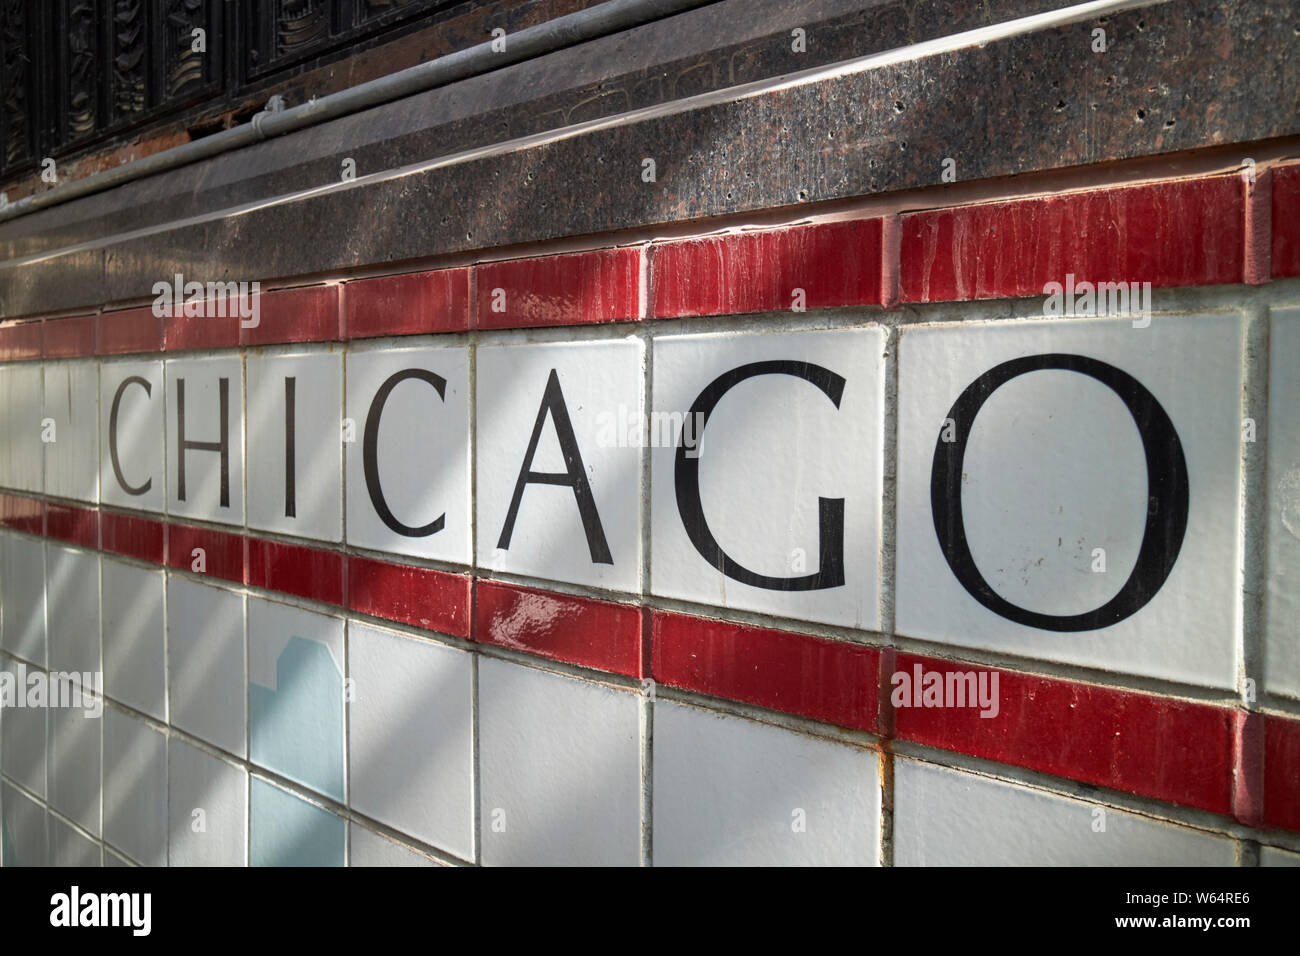 Chicago in lettere nere su piastrelle bianche all'ingresso per la stazione della metropolitana di Chicago IL USA Foto Stock